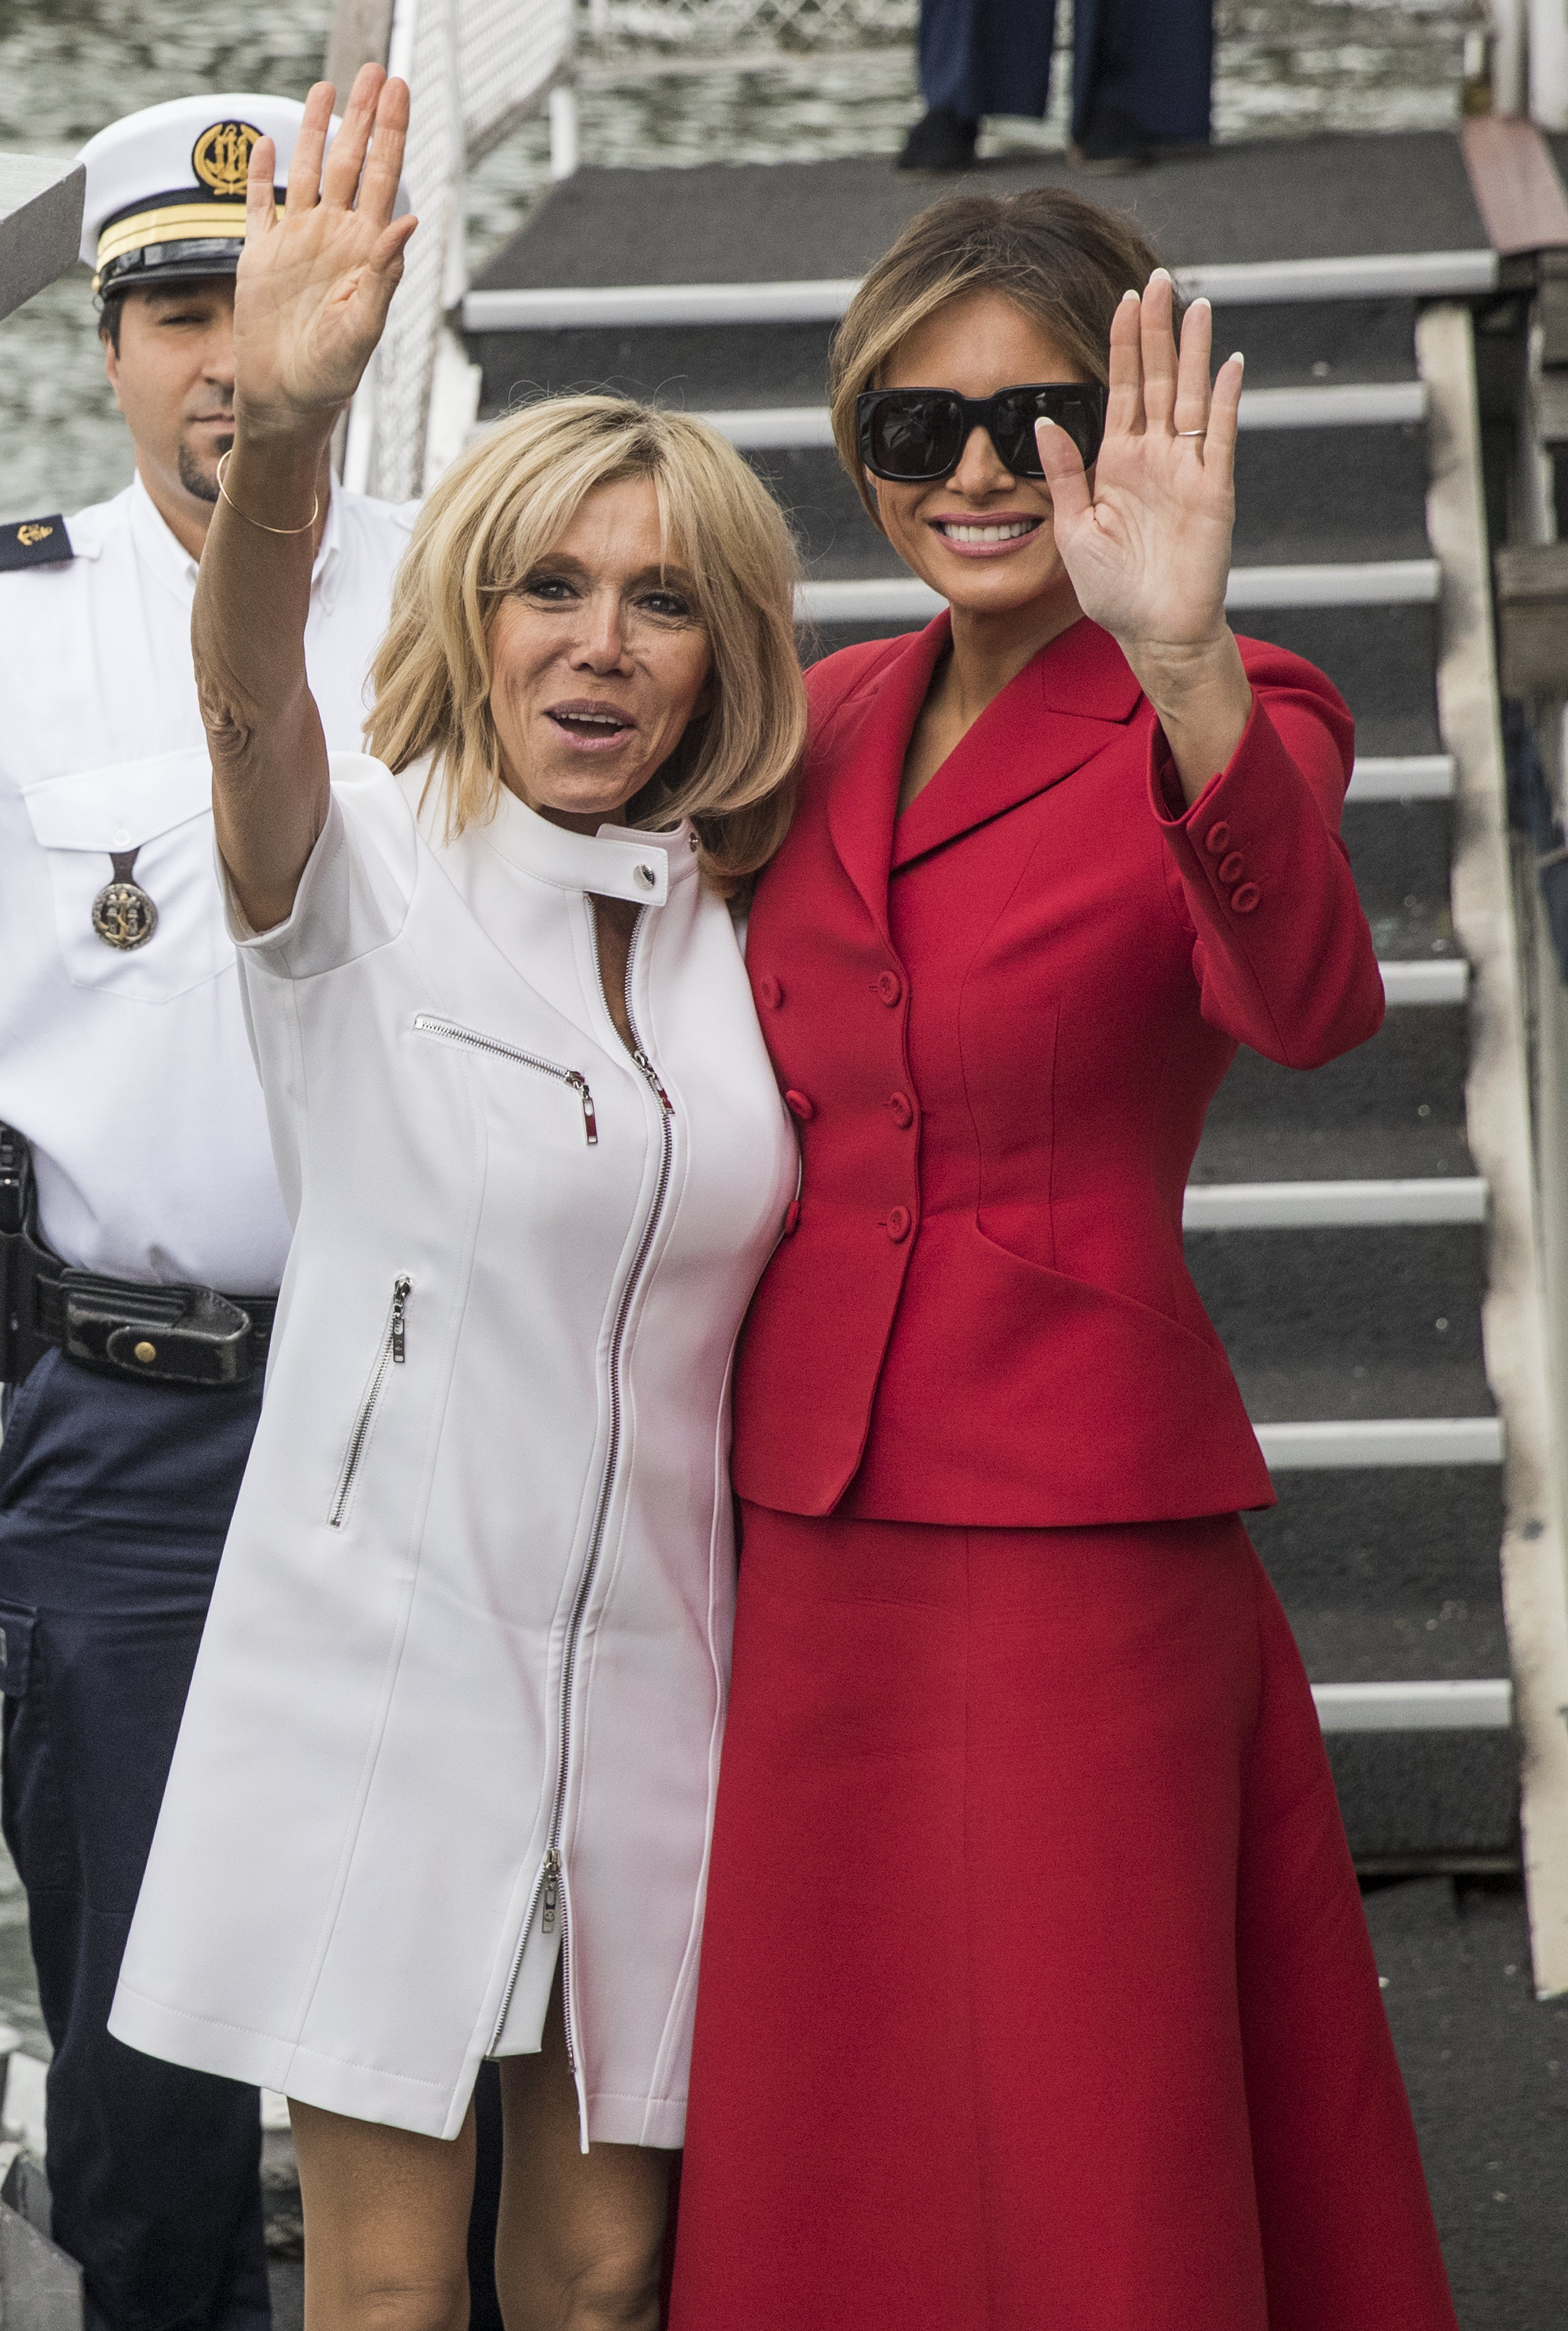 Мелания Тръмп и Бриджит Макрон посетиха заедно прочутата парижка катедрала „Нотр Дам” и се разходиха с корабче по река Сена, докато съпрузите им - президентите Доналд Тръмп и Еманюел Макрон имаха официална среща в Елисейския дворец